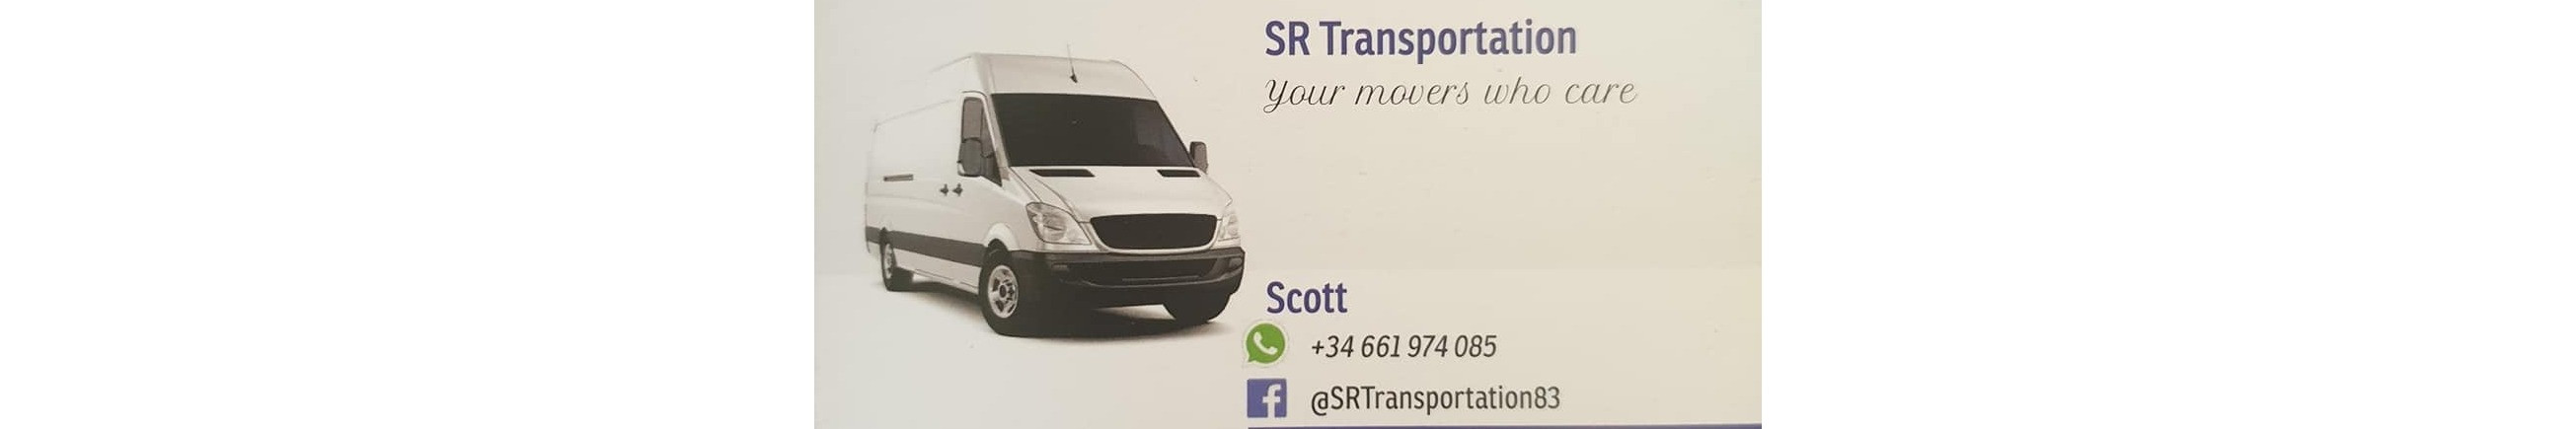 SR Transportation Removals